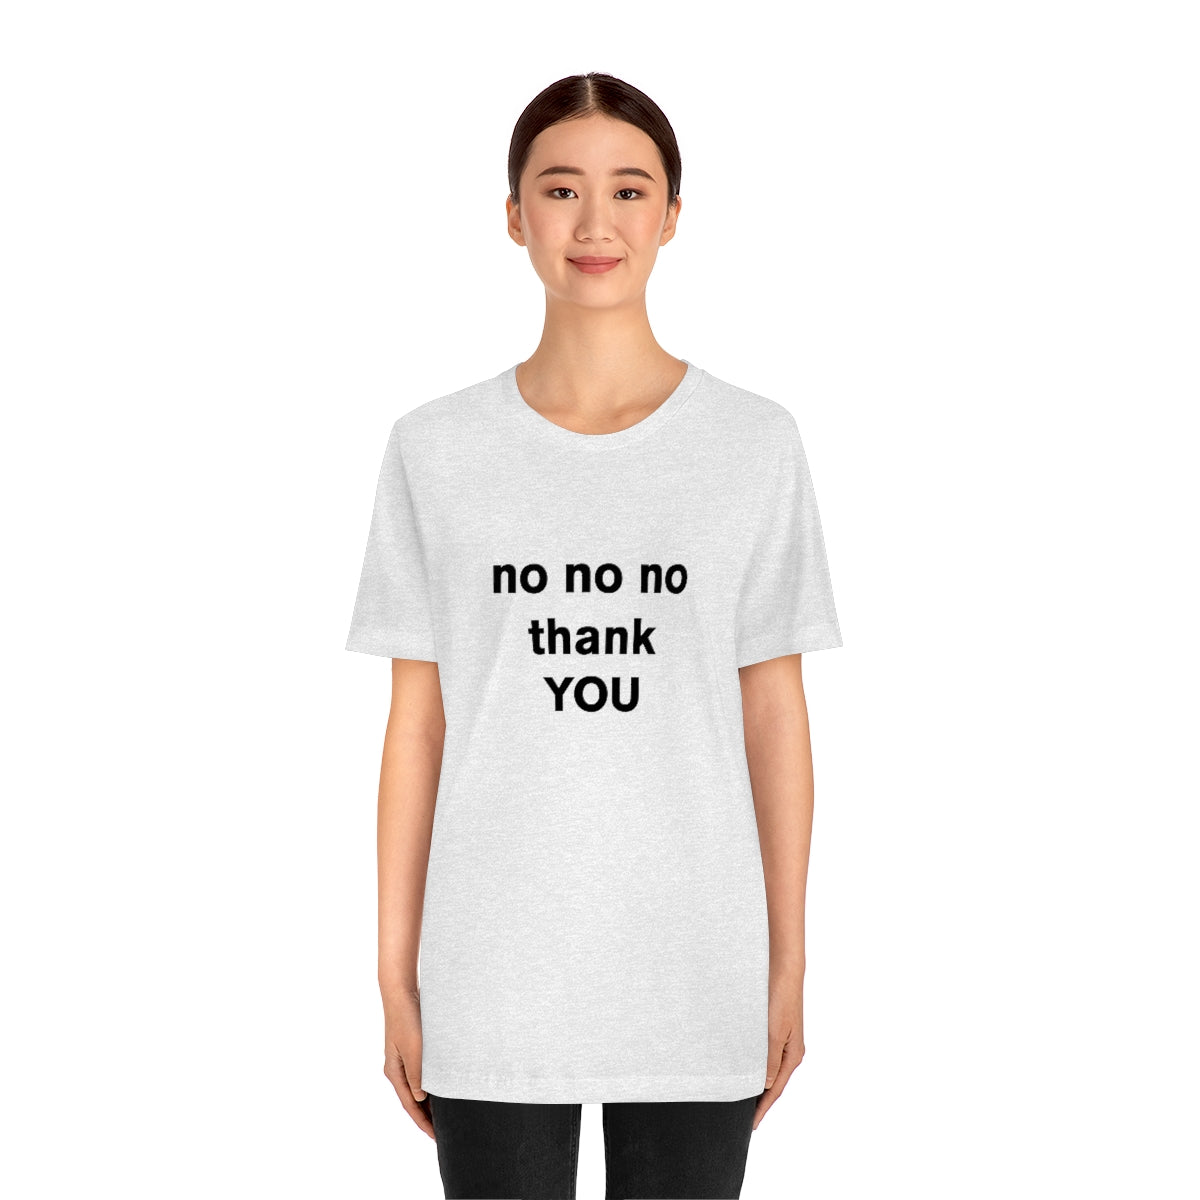 no no no thank YOU - t-shirt